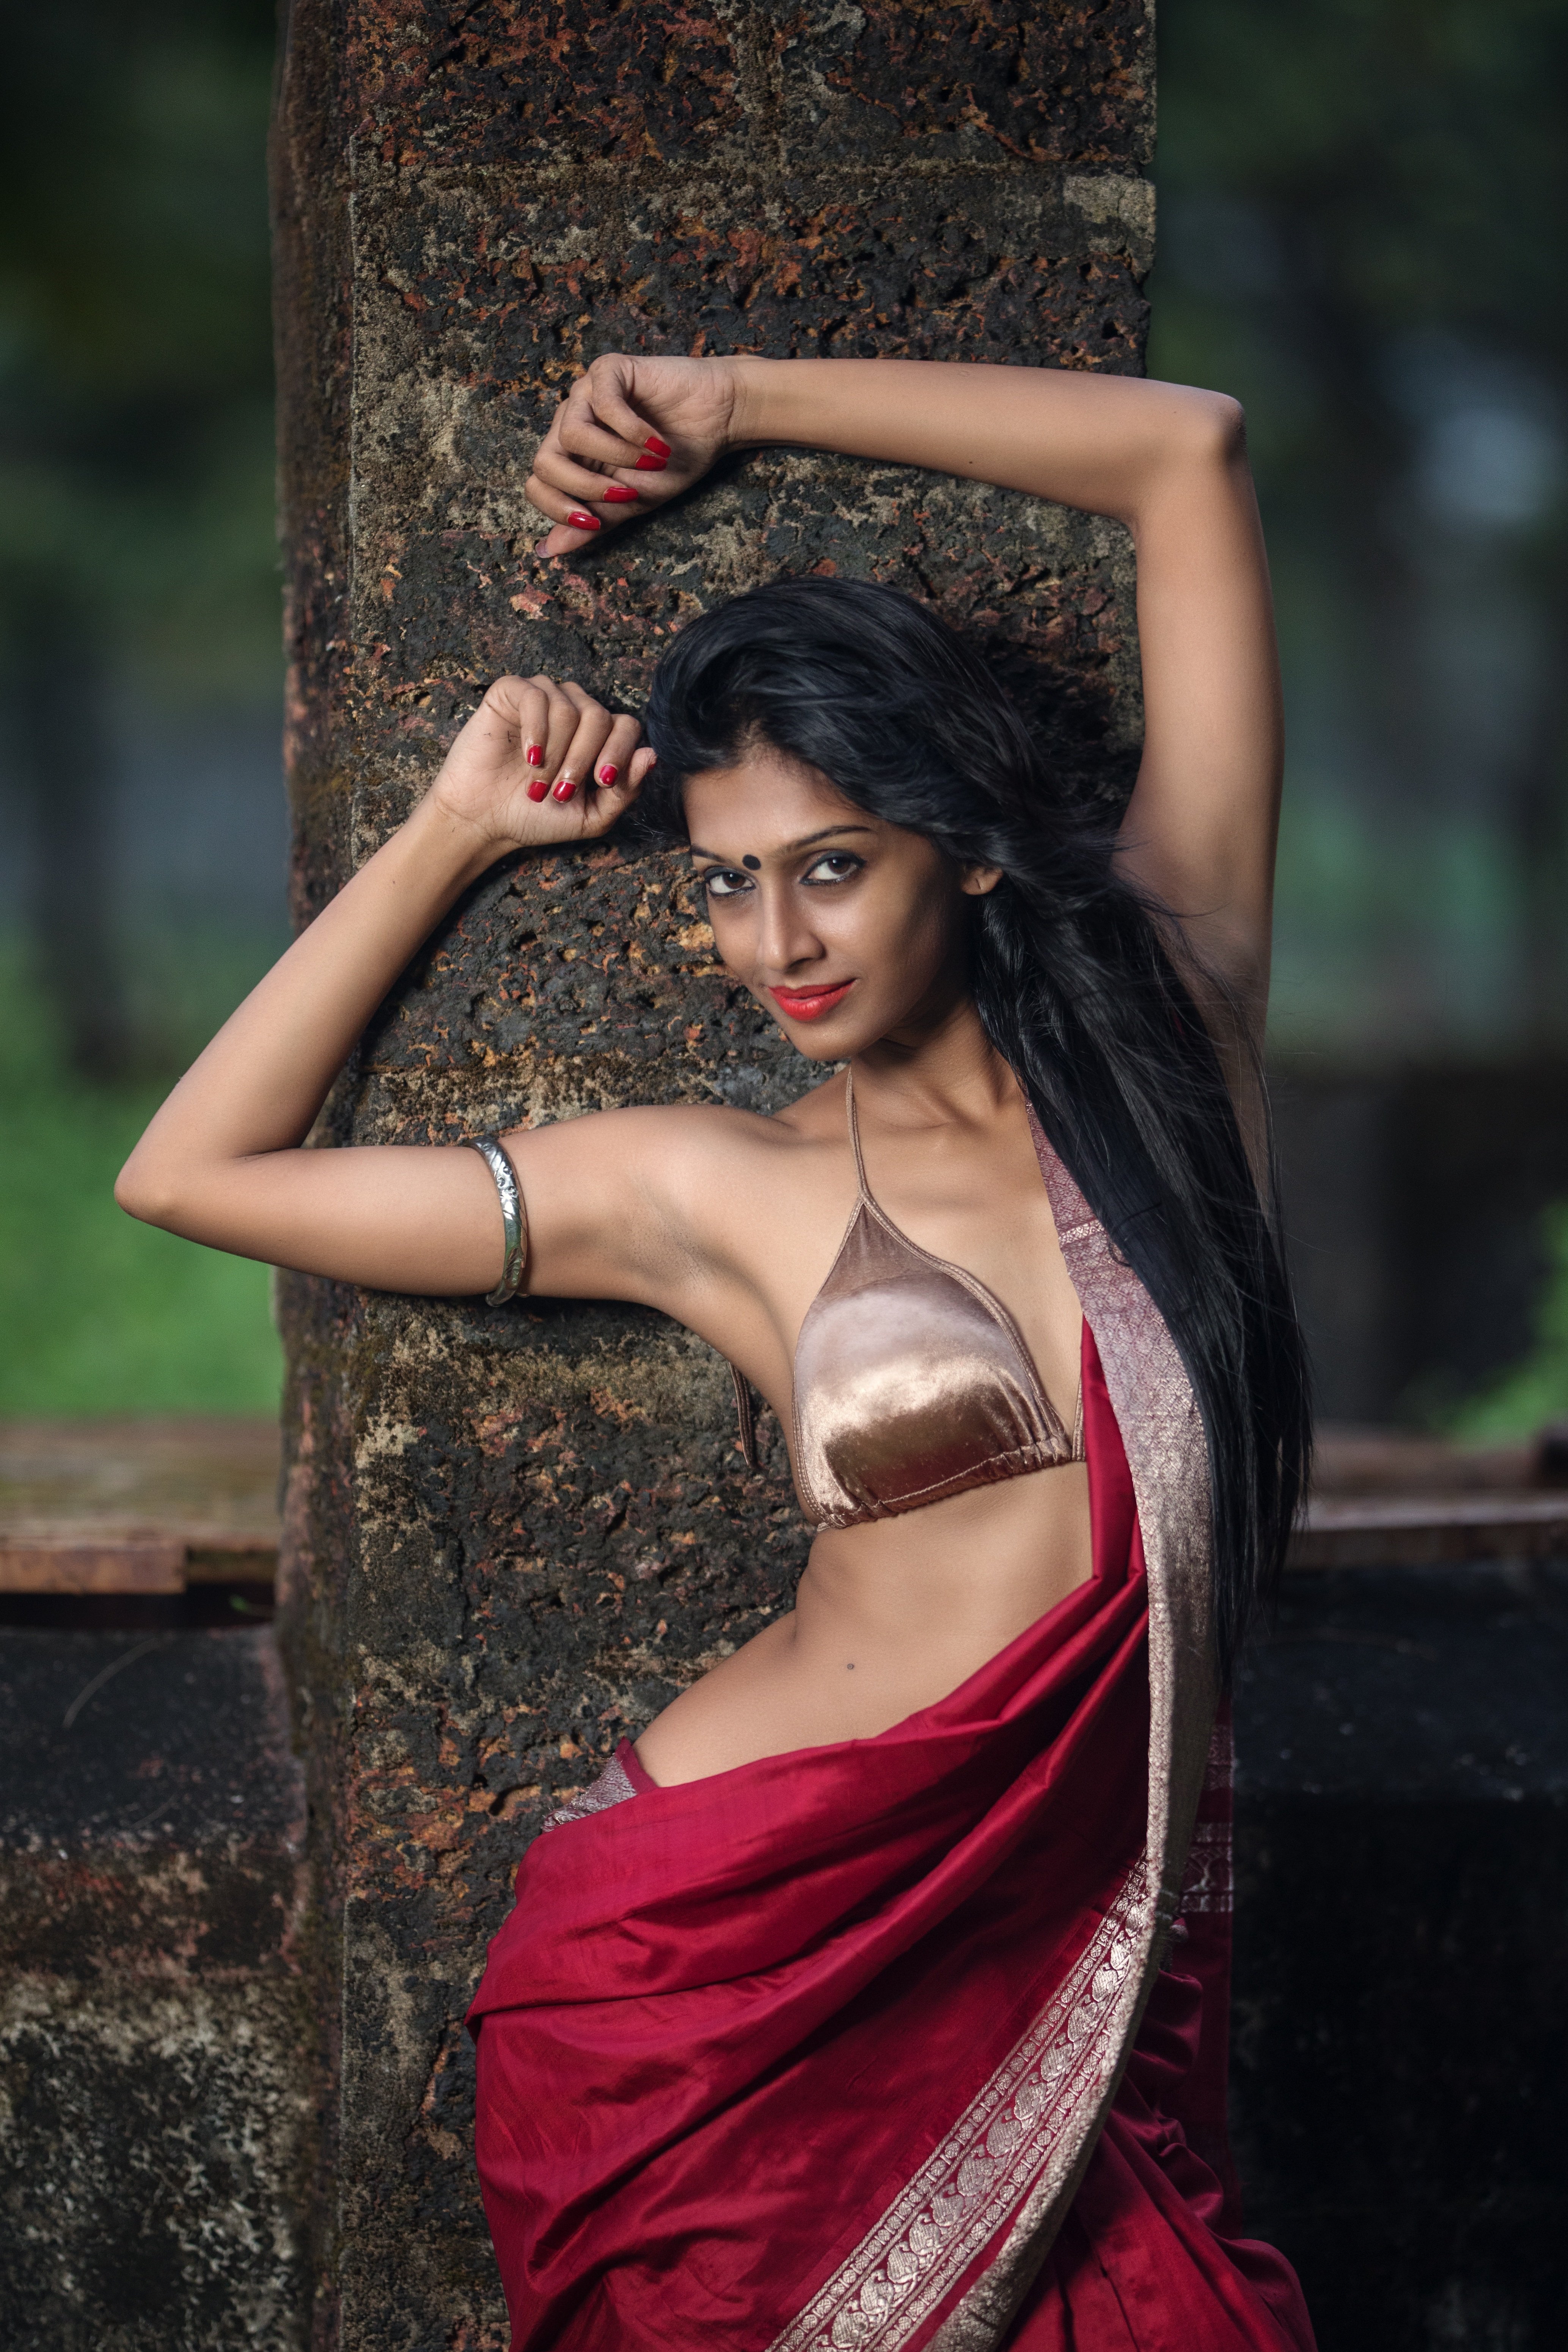 corey callihan share hot babes in saree photos